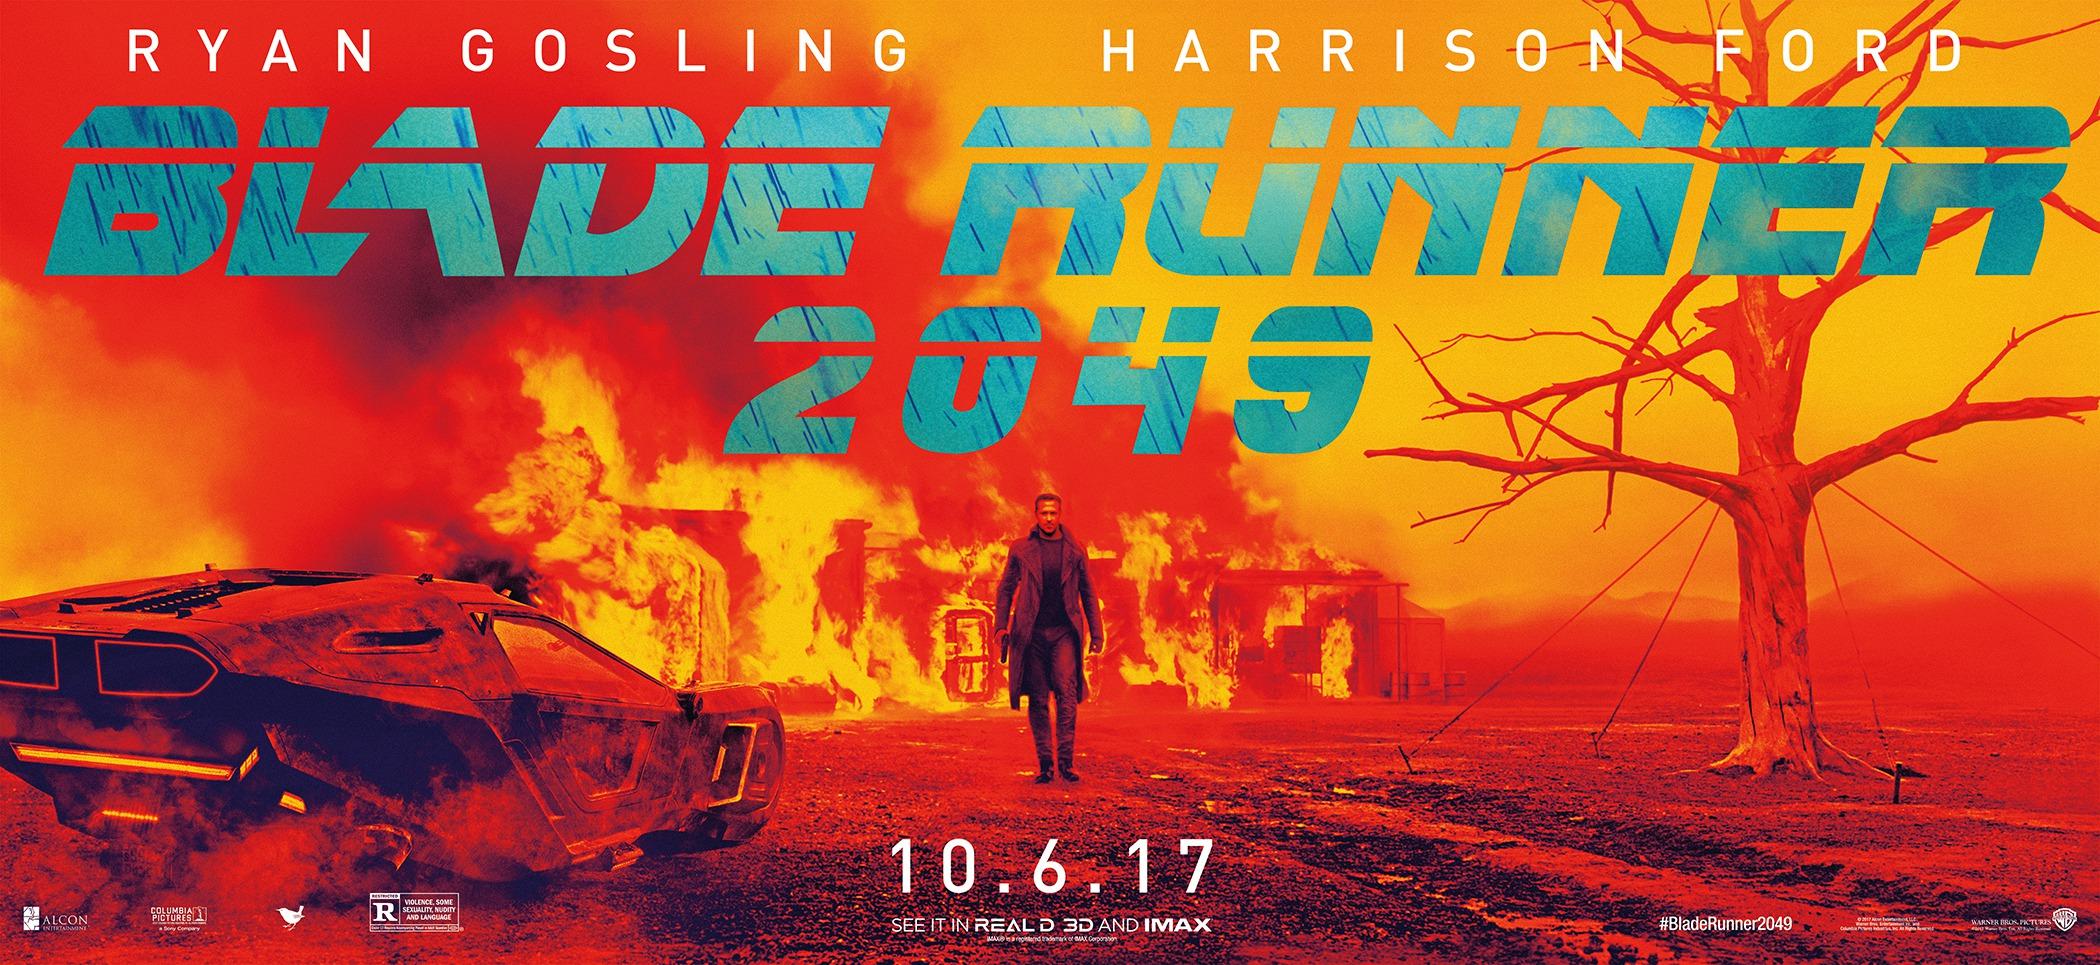 Постер фильма Бегущий по лезвию 2049 | Blade Runner 2049